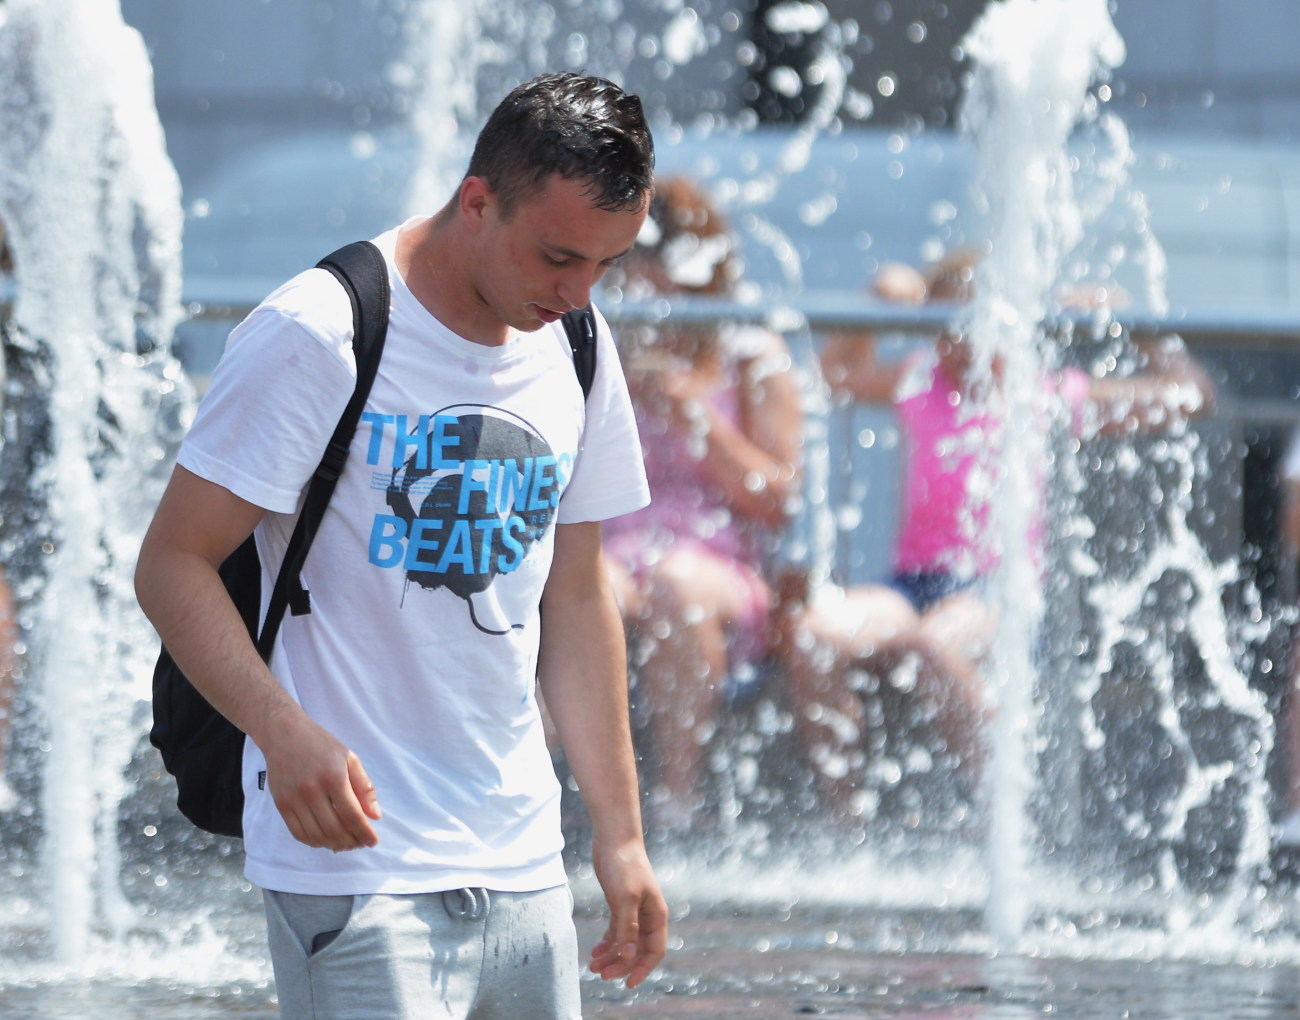 Лето в Киеве поставило сразу несколько температурных рекордов